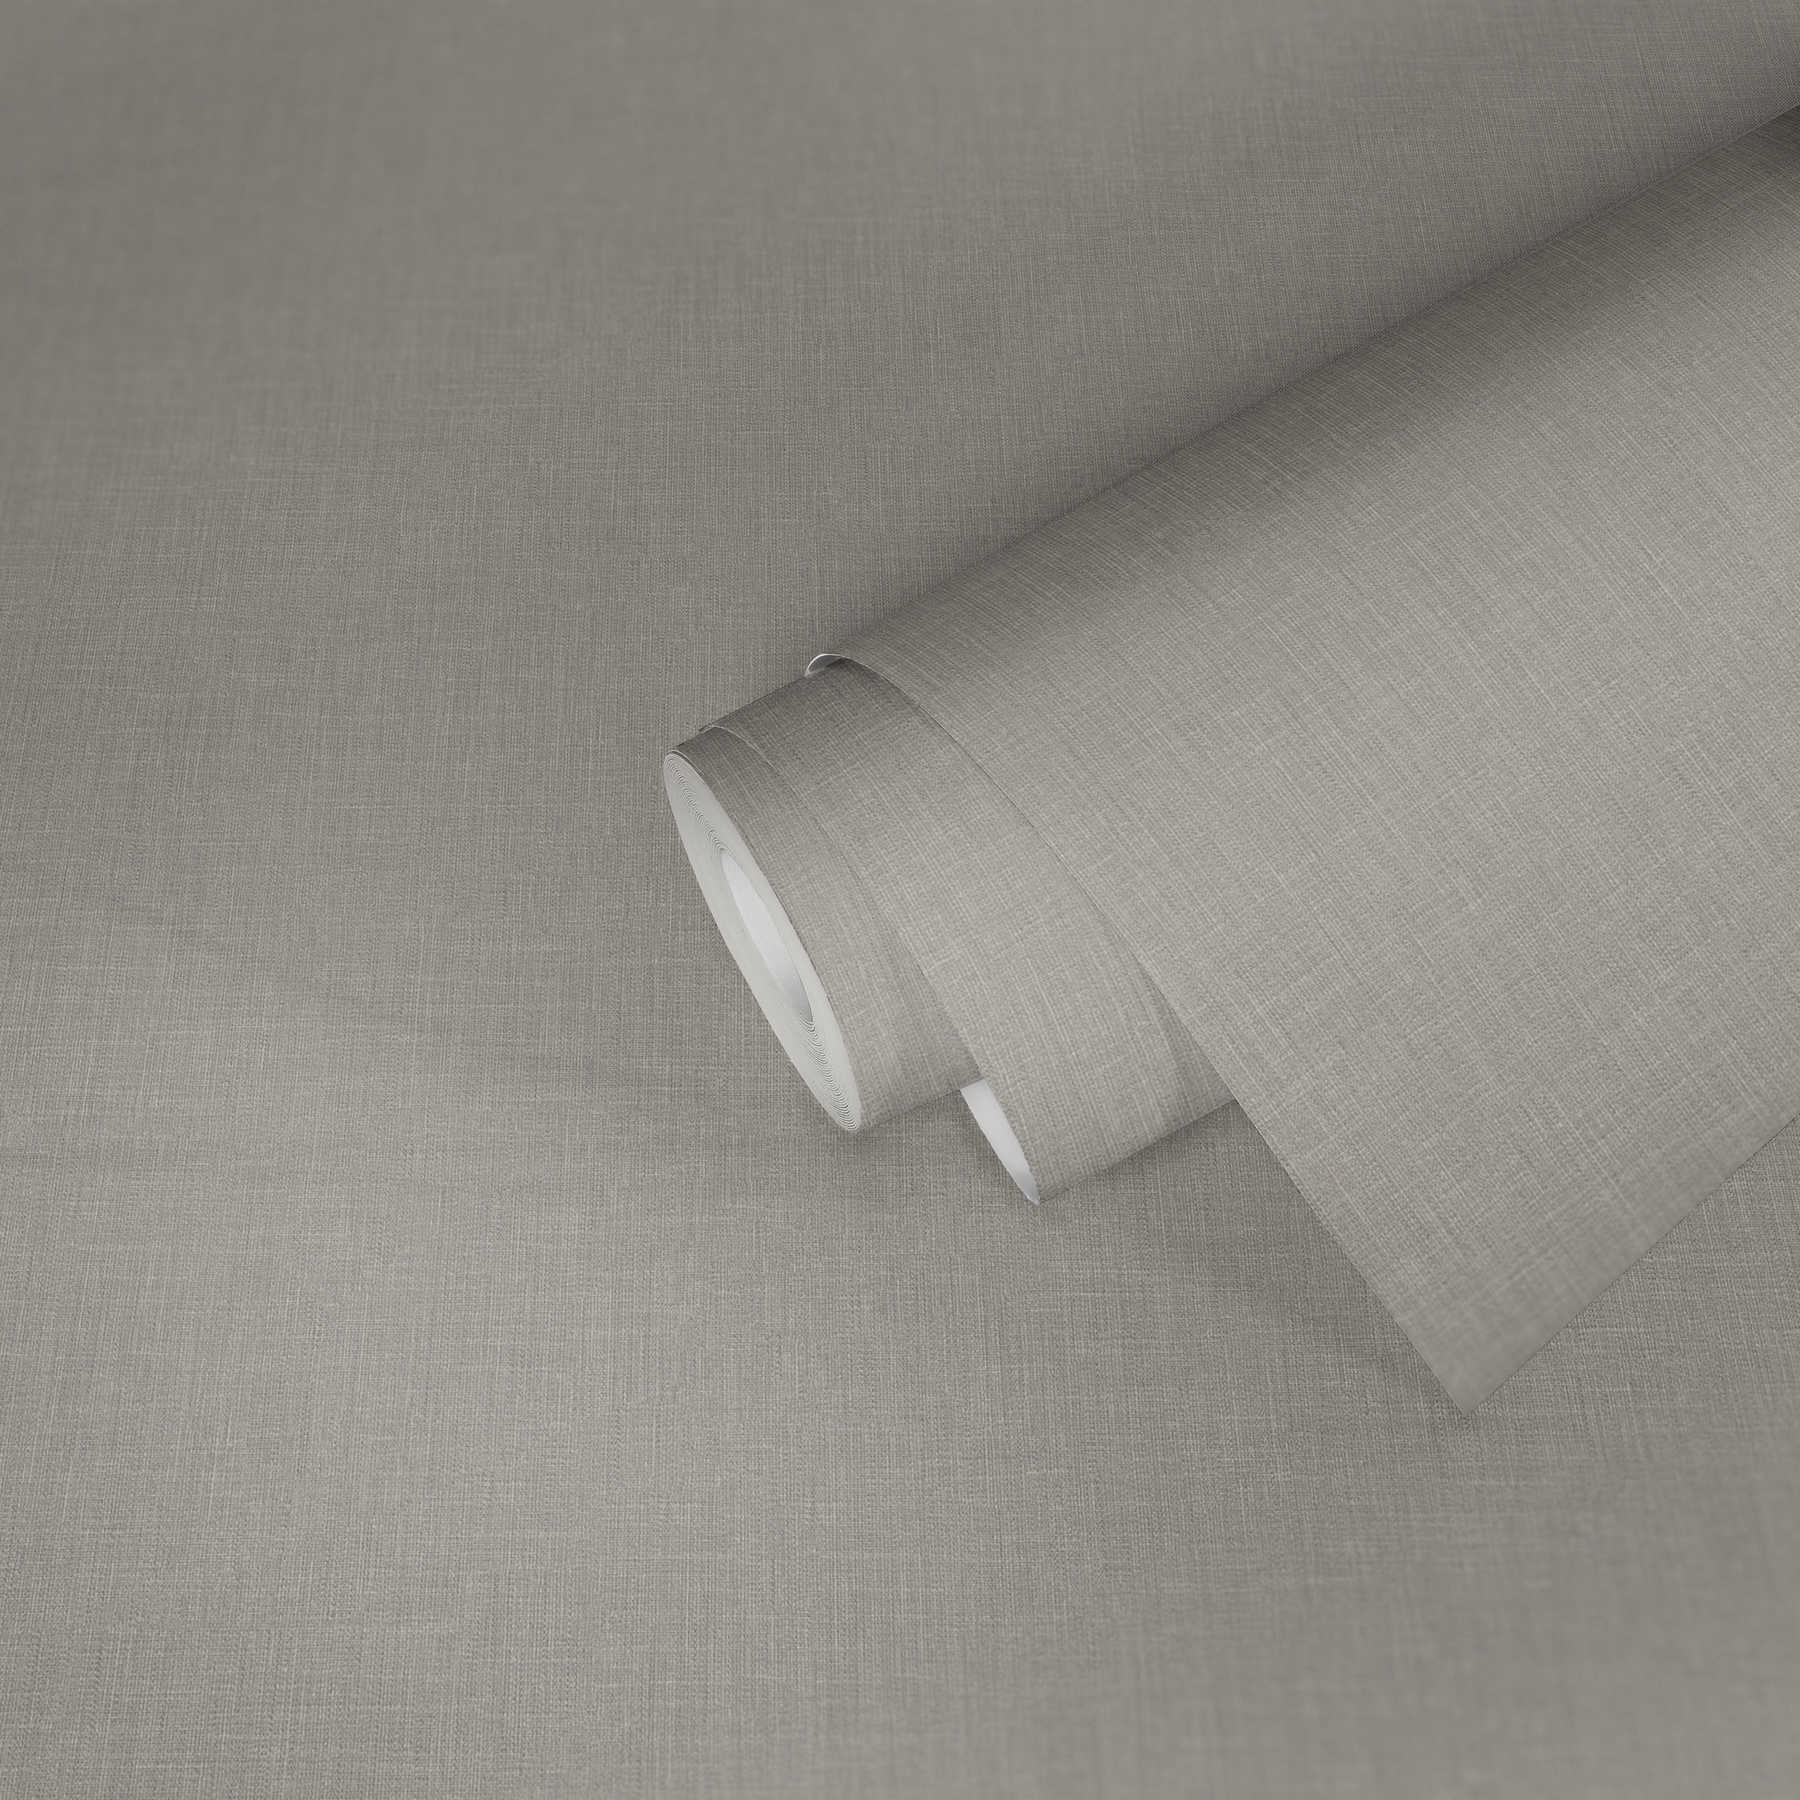             Papel pintado no tejido de color gris con aspecto textil y patrón texturizado
        